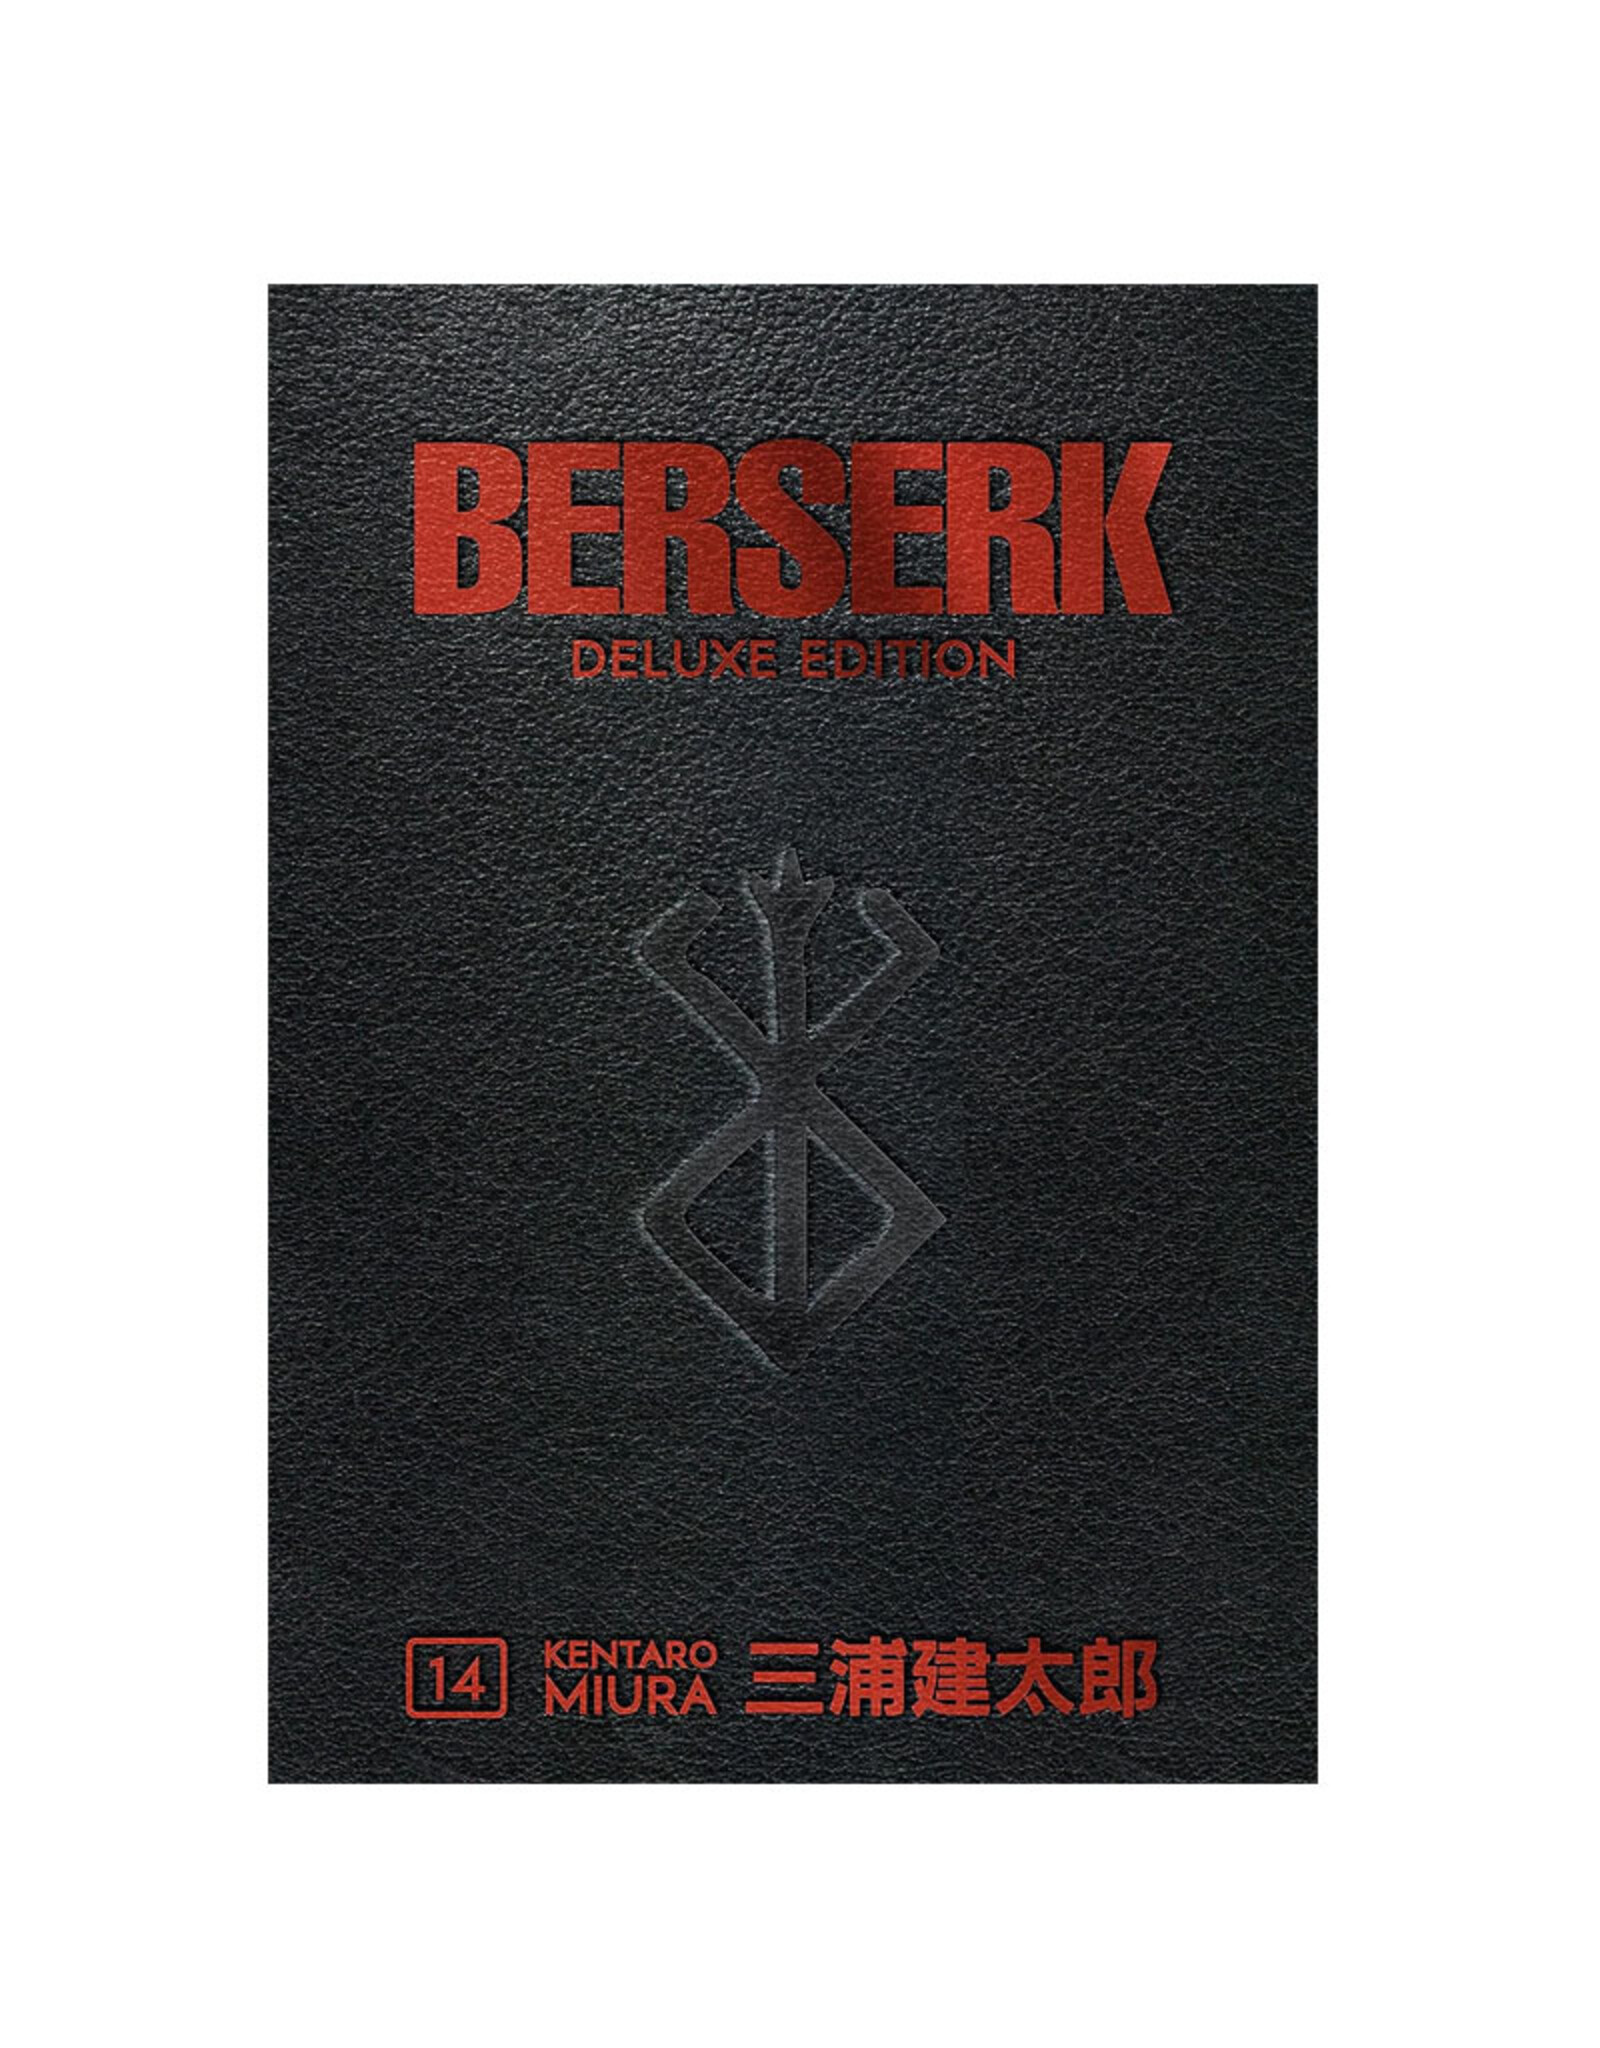 Dark Horse Comics Berserk Deluxe Edition Hardcover Volume 14